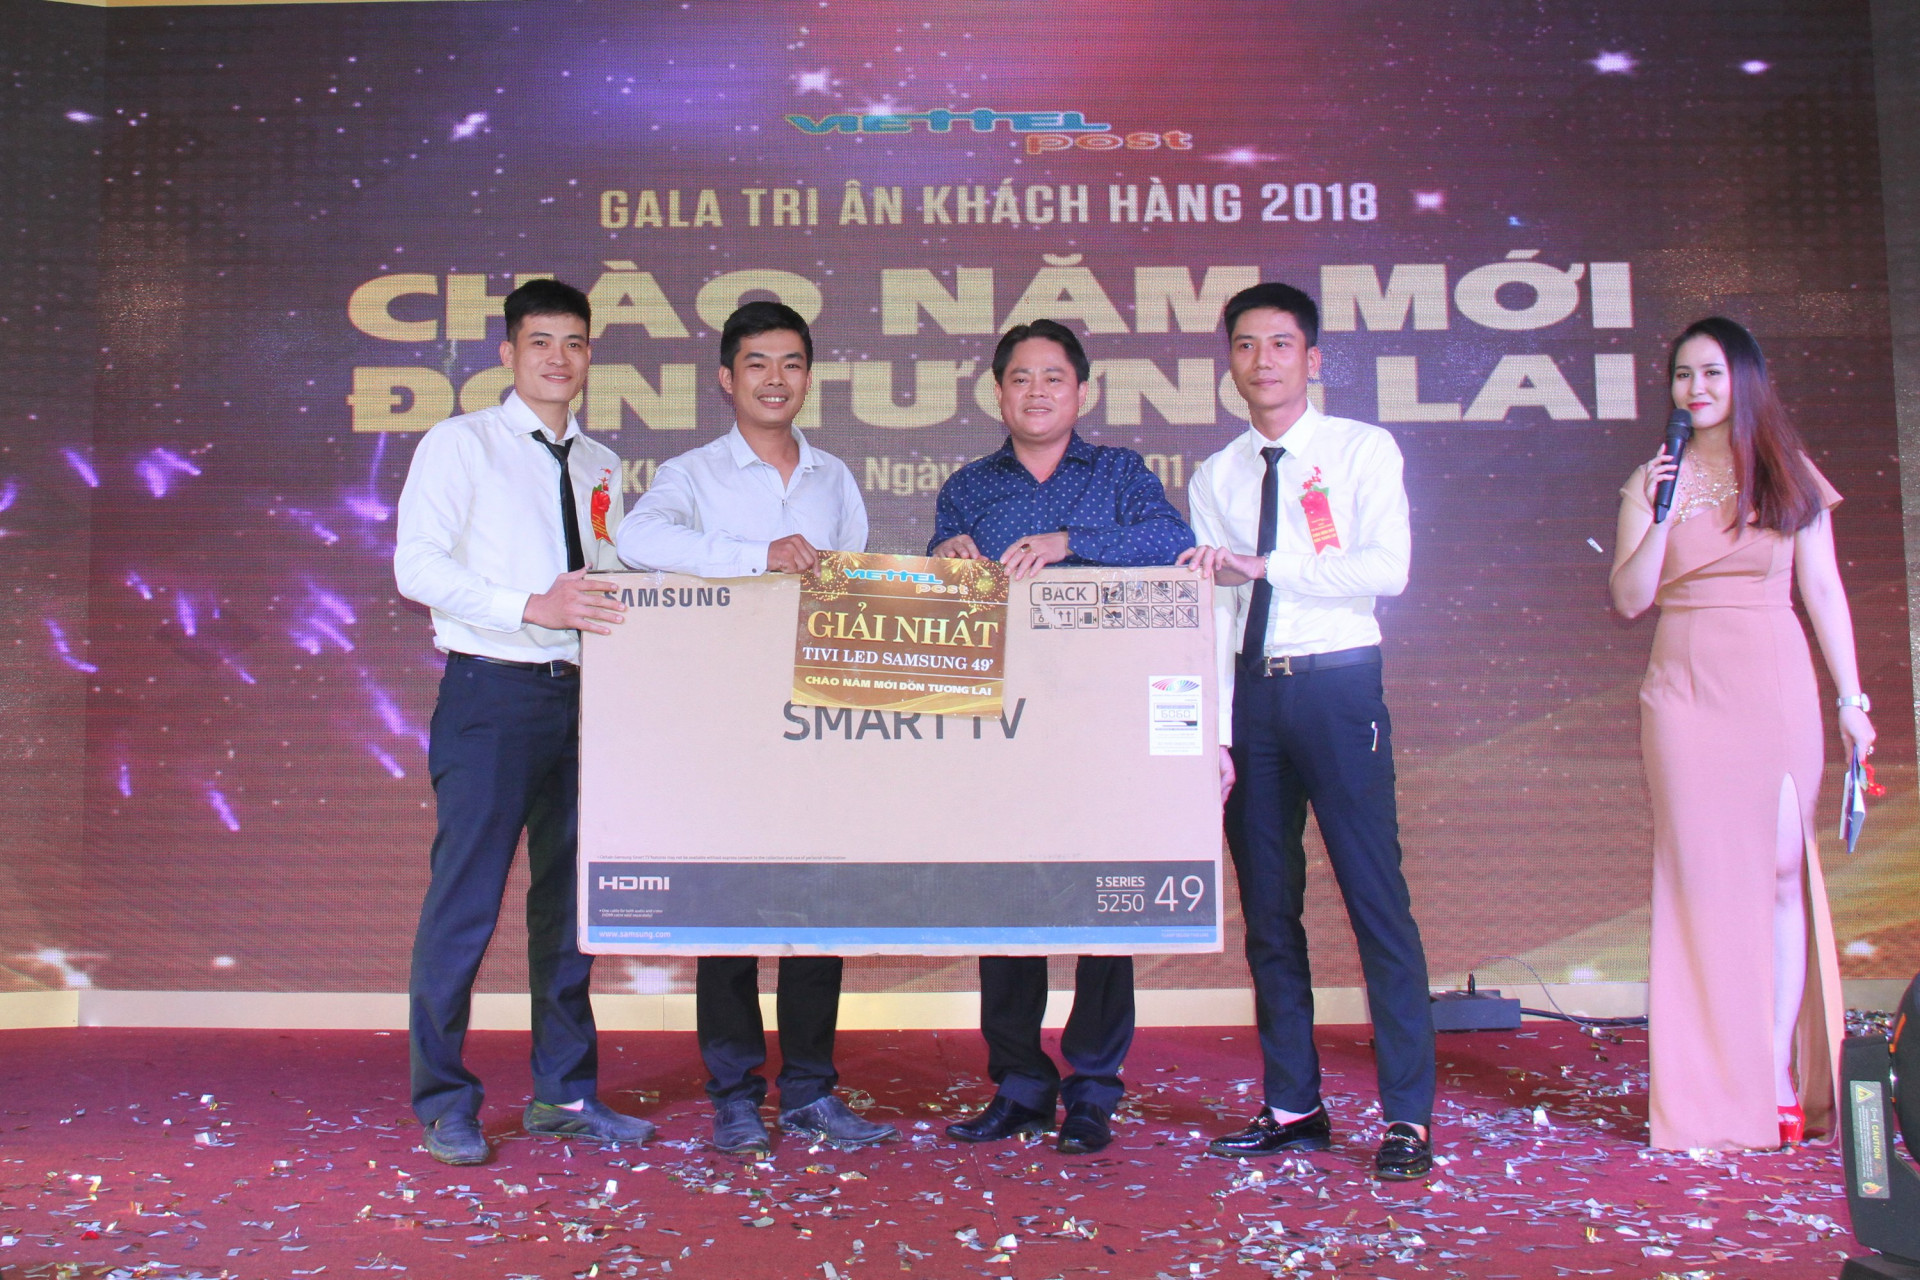  Ông Lê Xuân Sáng - Giám đốc Viettel Post chi nhánh Khánh Hòa trao giải Nhất cho khách hàng trúng thưởng